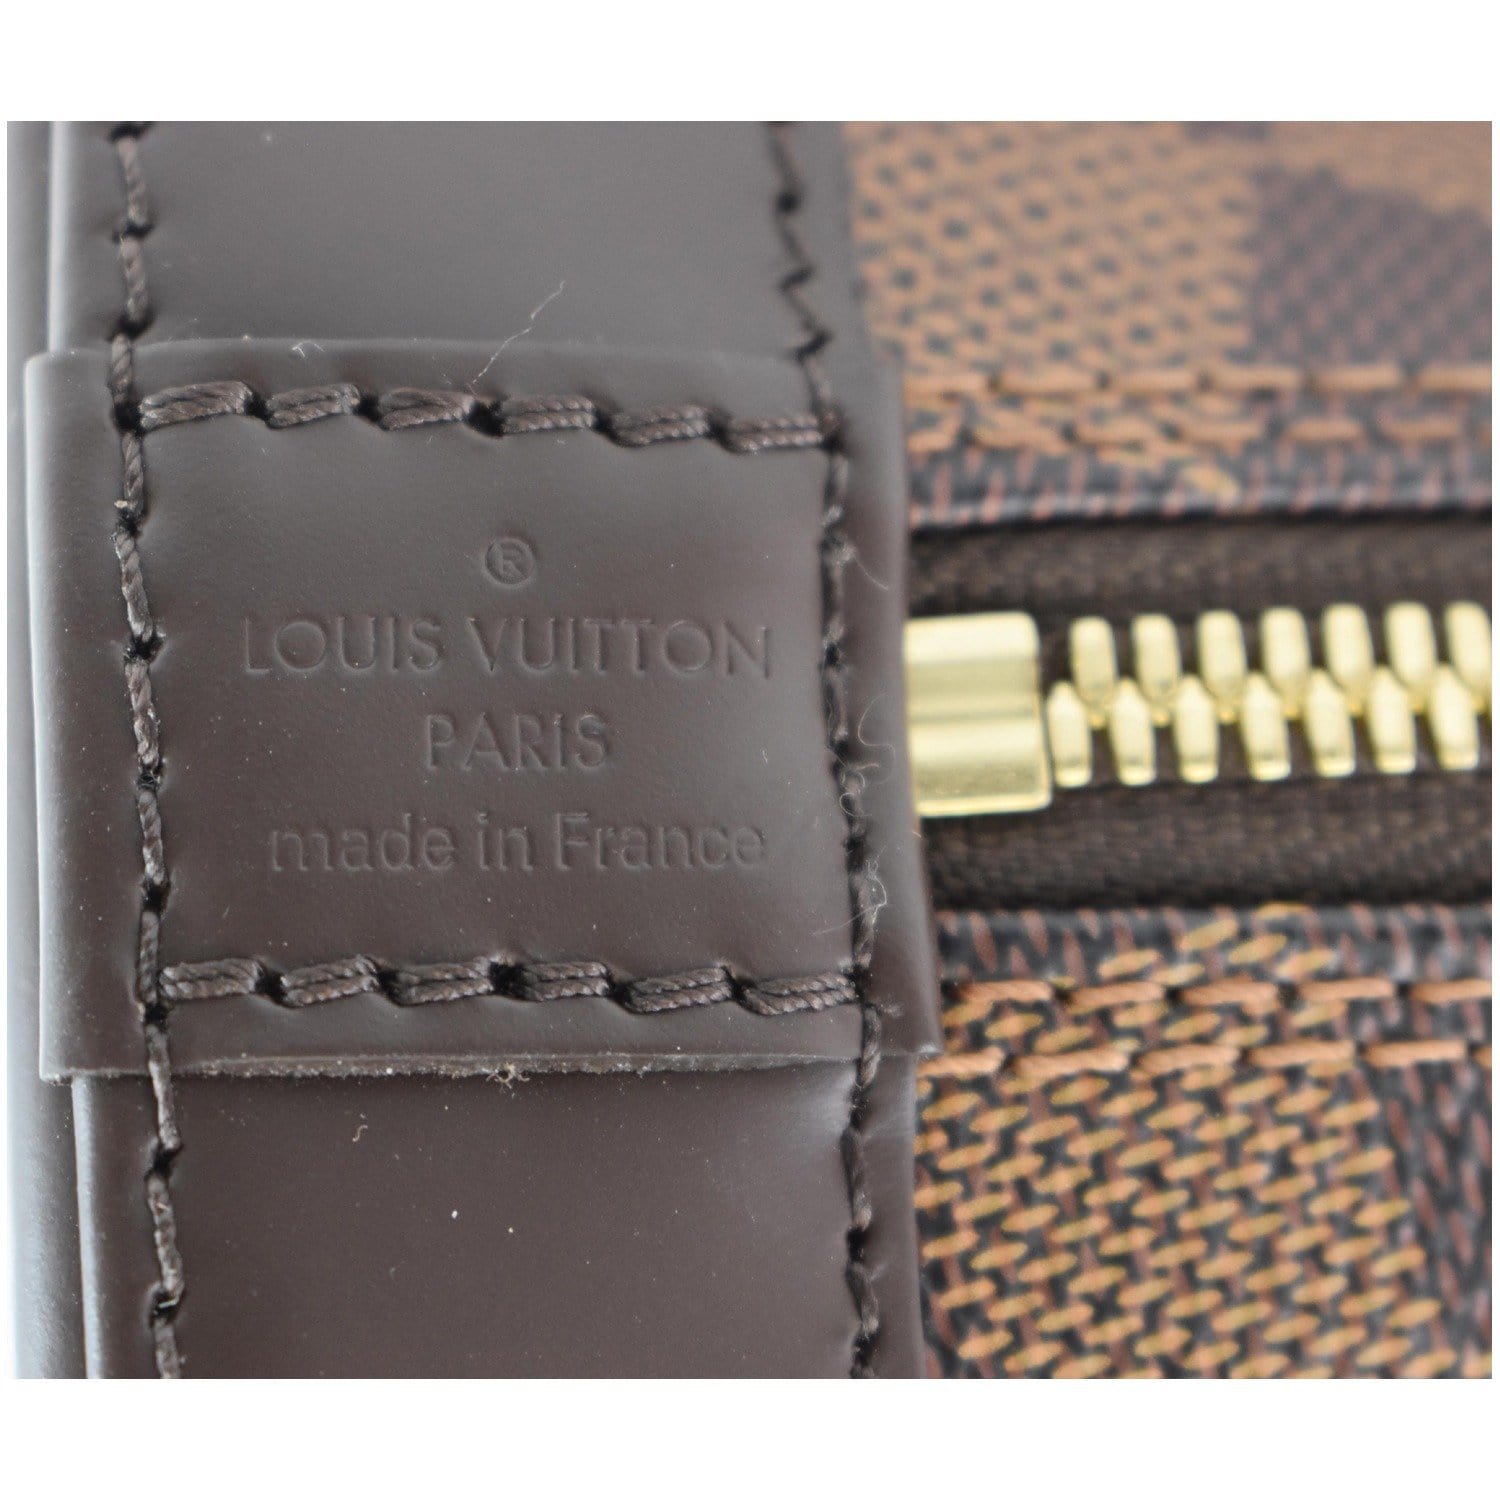 Louis Vuitton, Alma BB Damier plain, brown-checked rubbe…